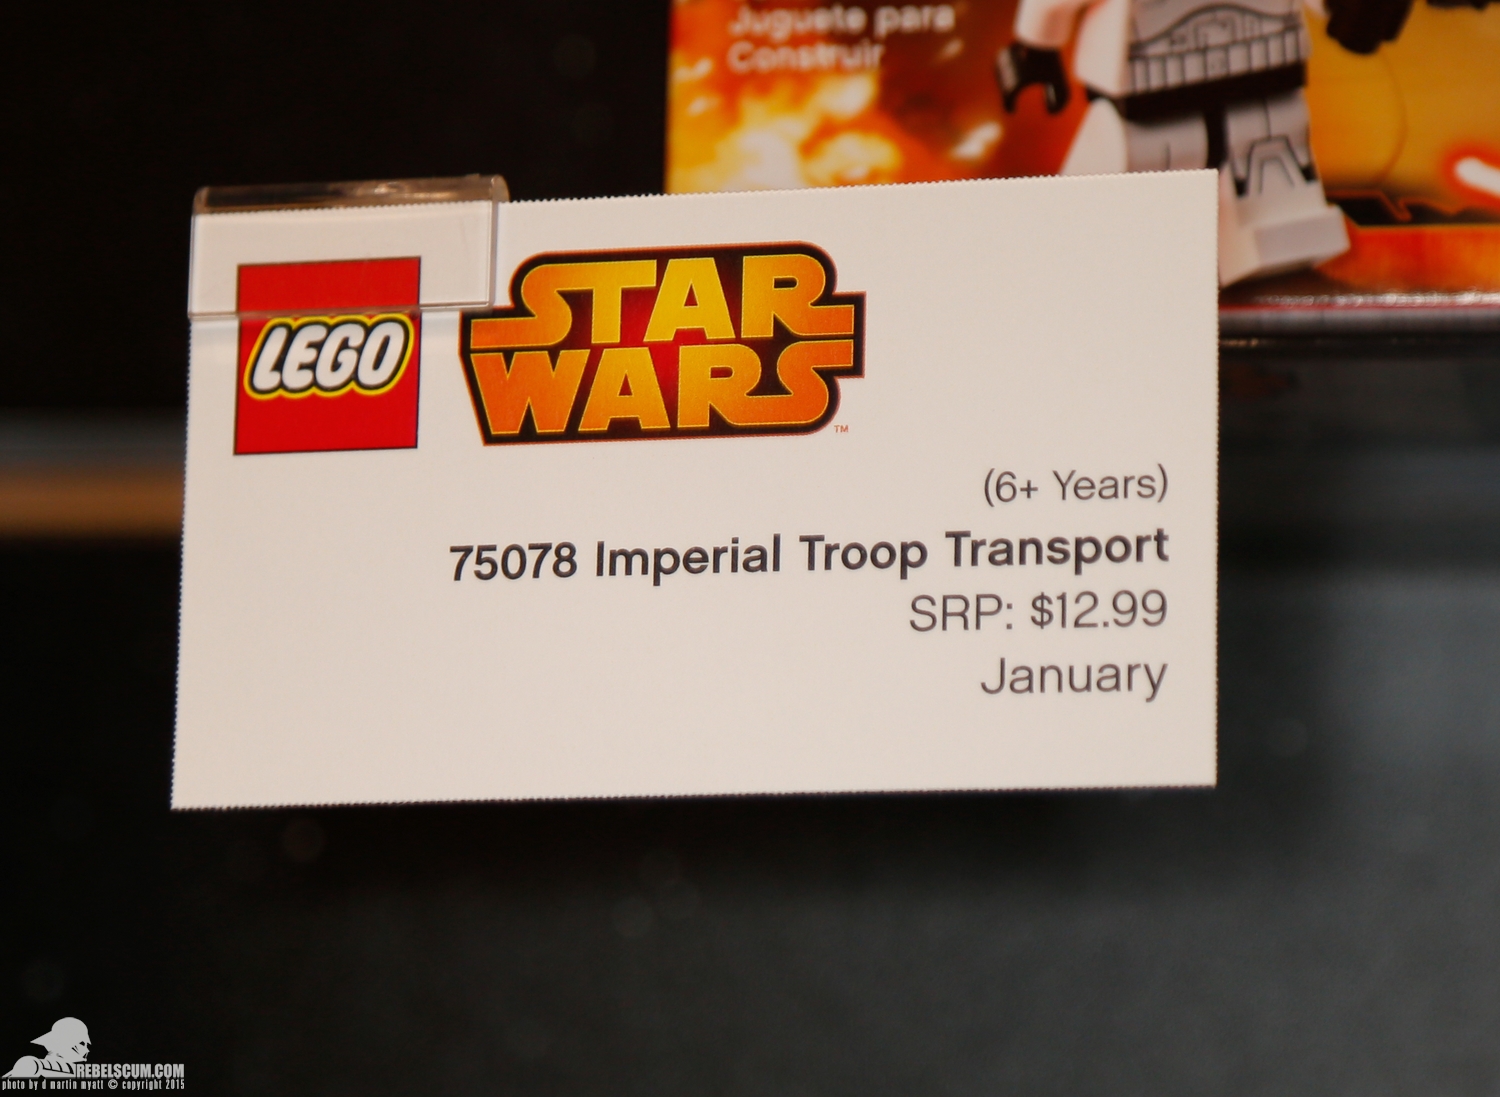 2015-International-Toy-Fair-Star-Wars-Lego-025.jpg